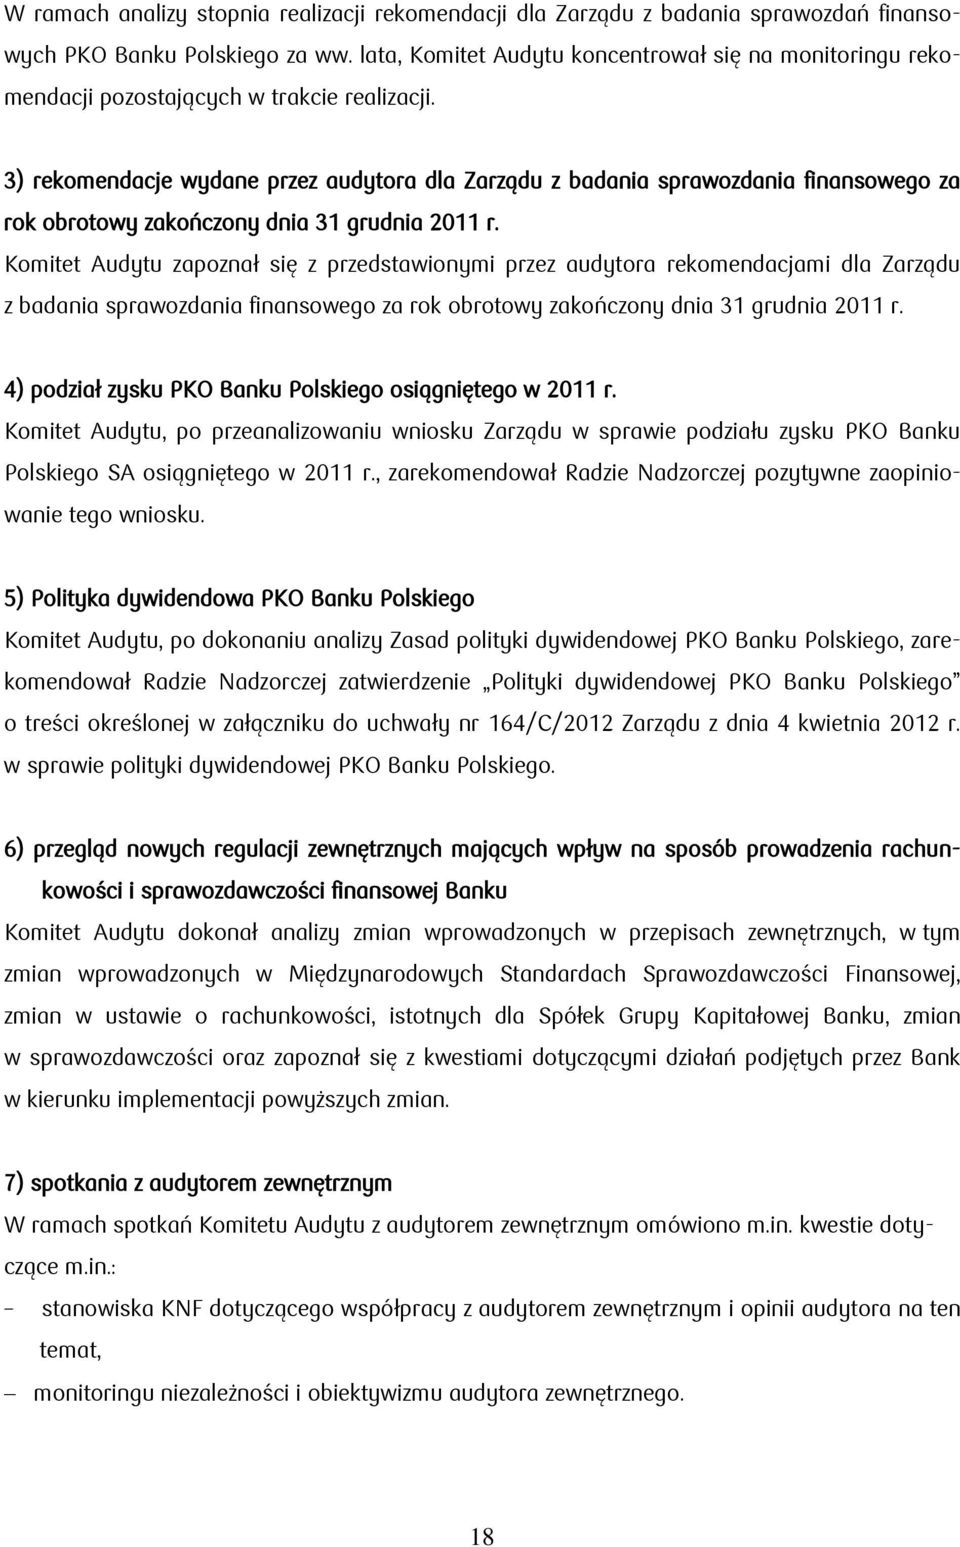 3) rekomendacje wydane przez audytora dla Zarządu z badania sprawozdania finansowego za rok obrotowy zakończony dnia 31 grudnia 2011 r.